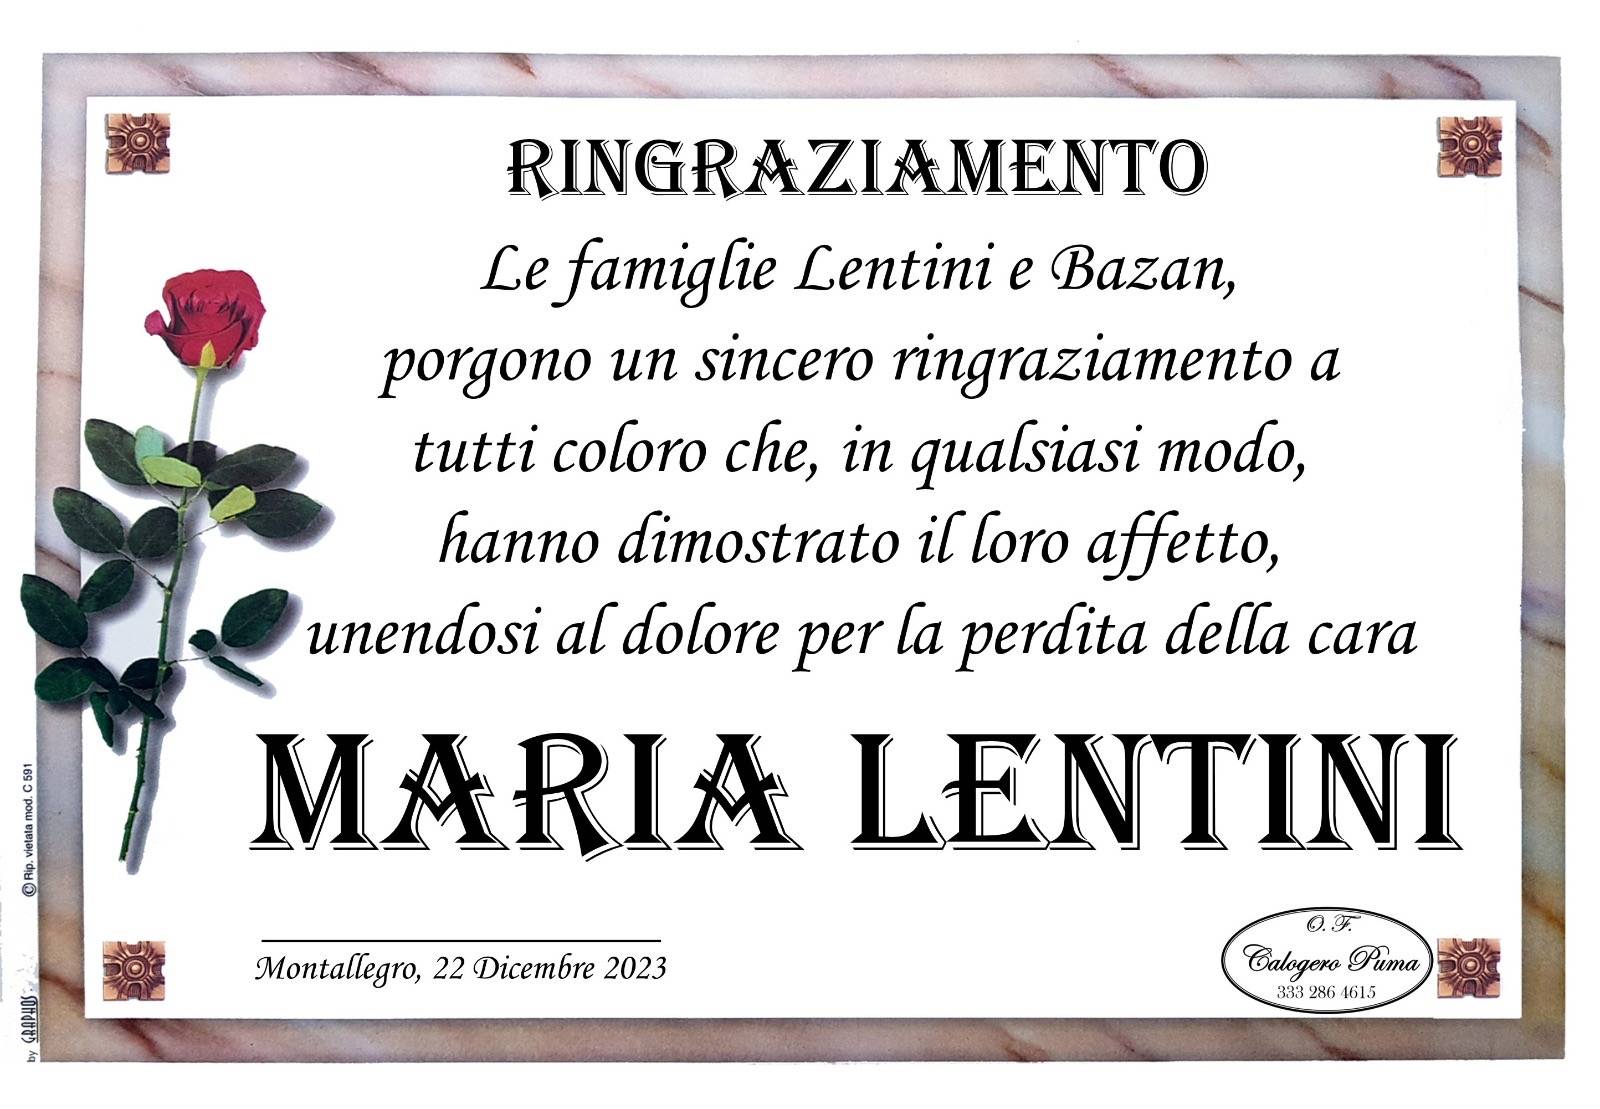 Maria Lentini